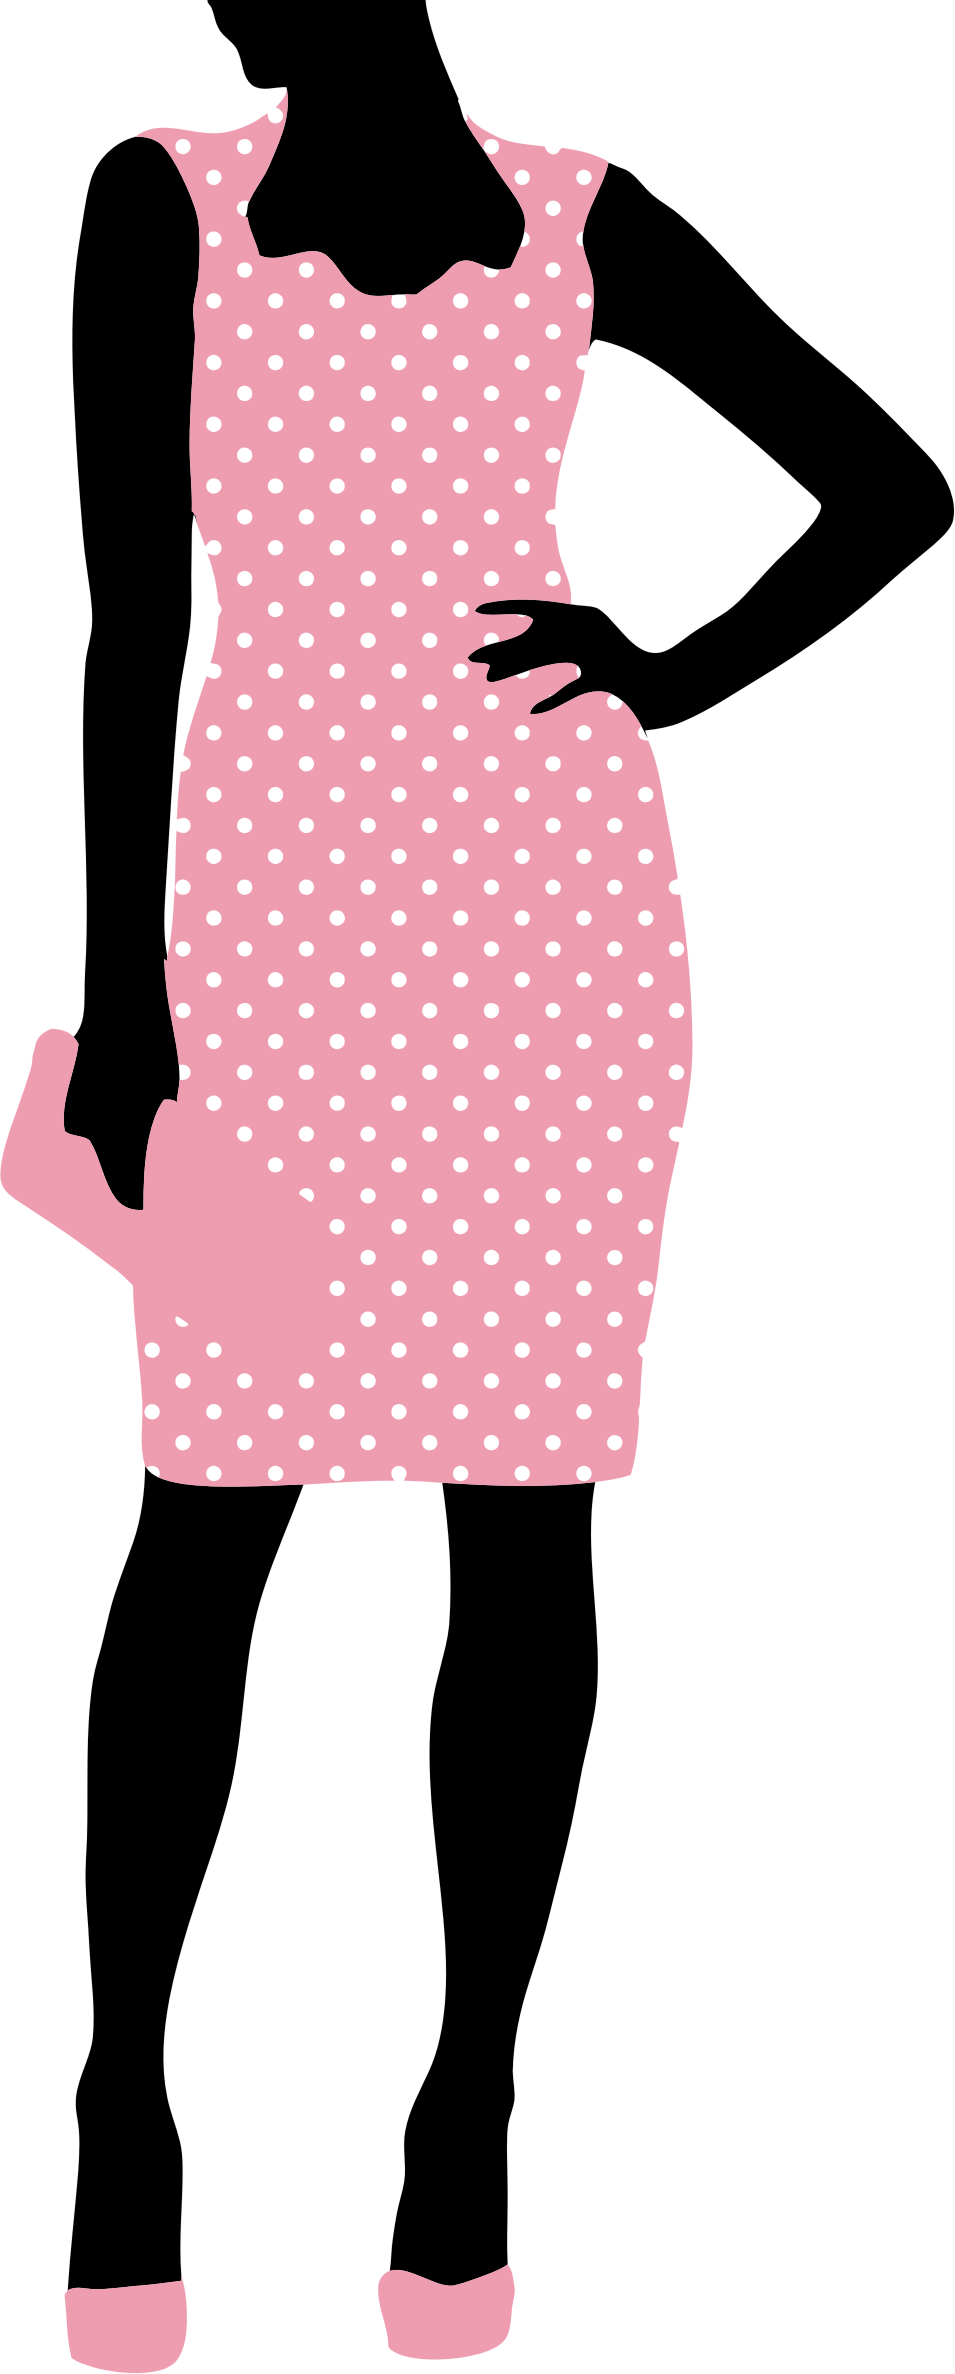 Fashion woman pink dress. 3 clipart polka dot